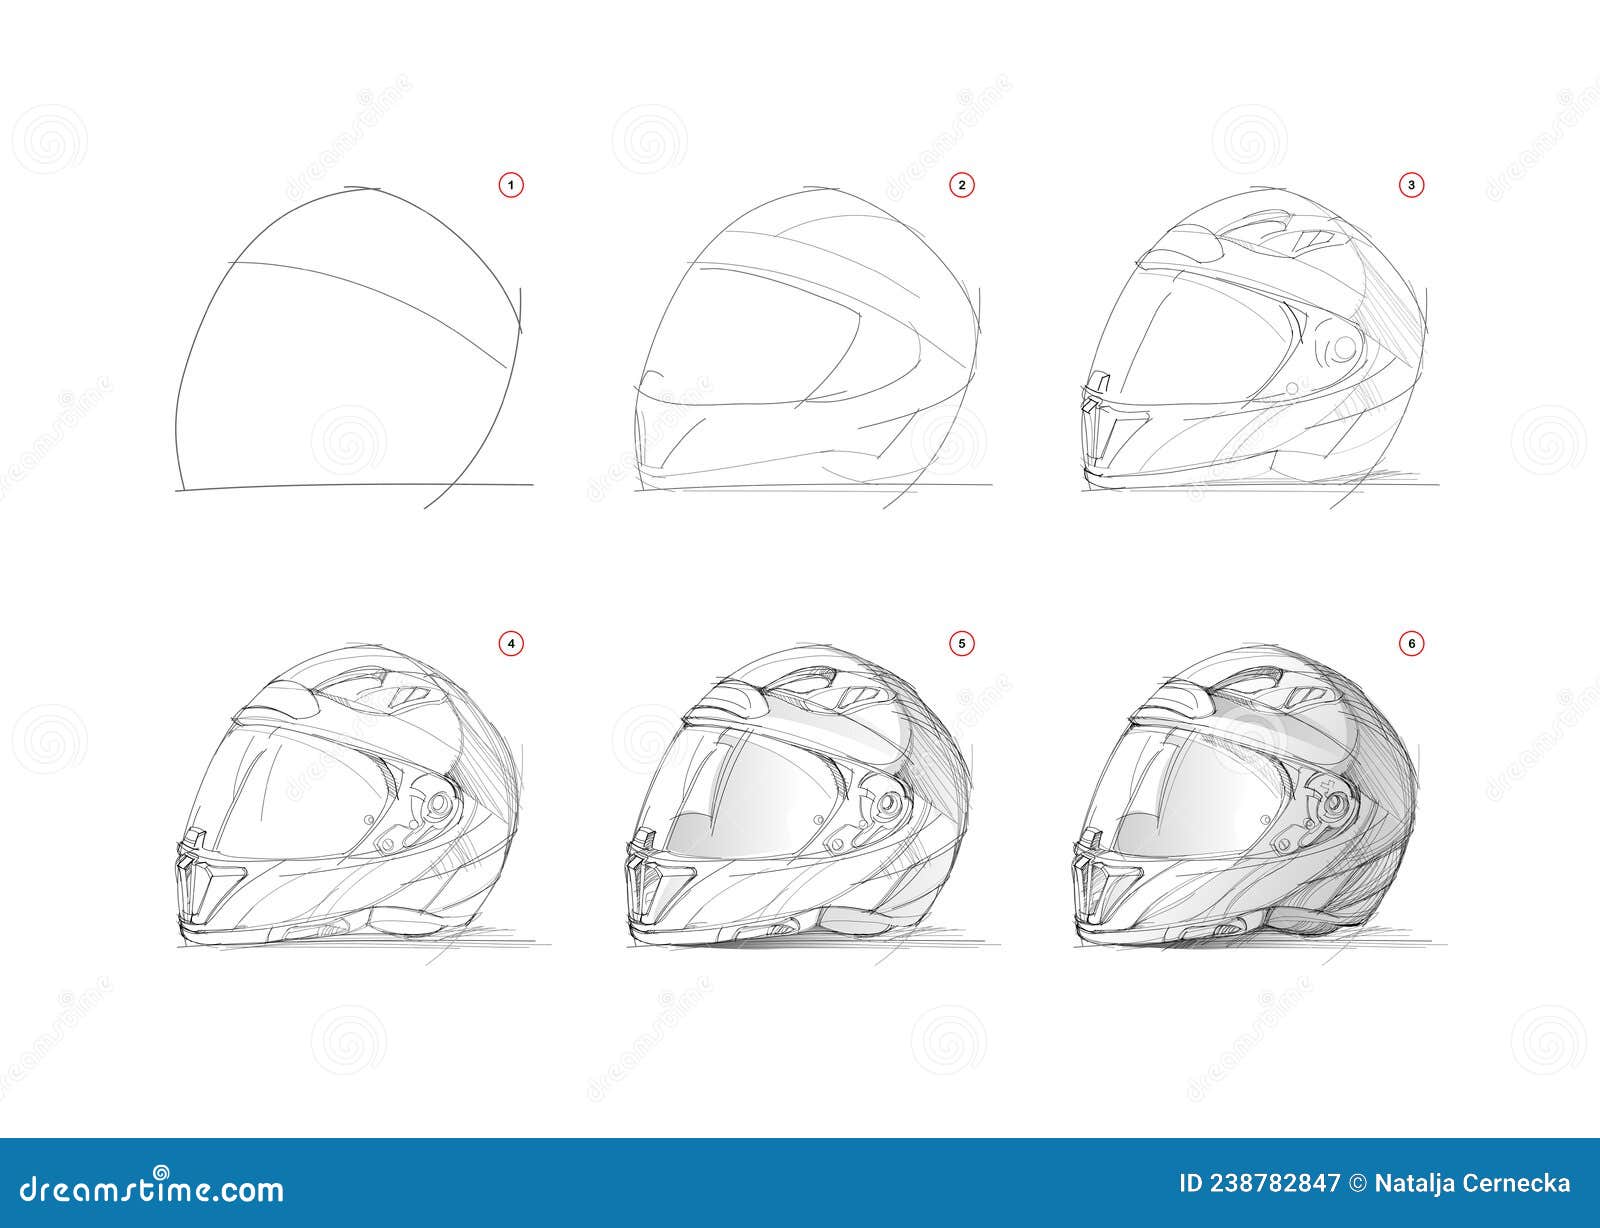  Guia Curso Básico de Desenho - Motocicletas